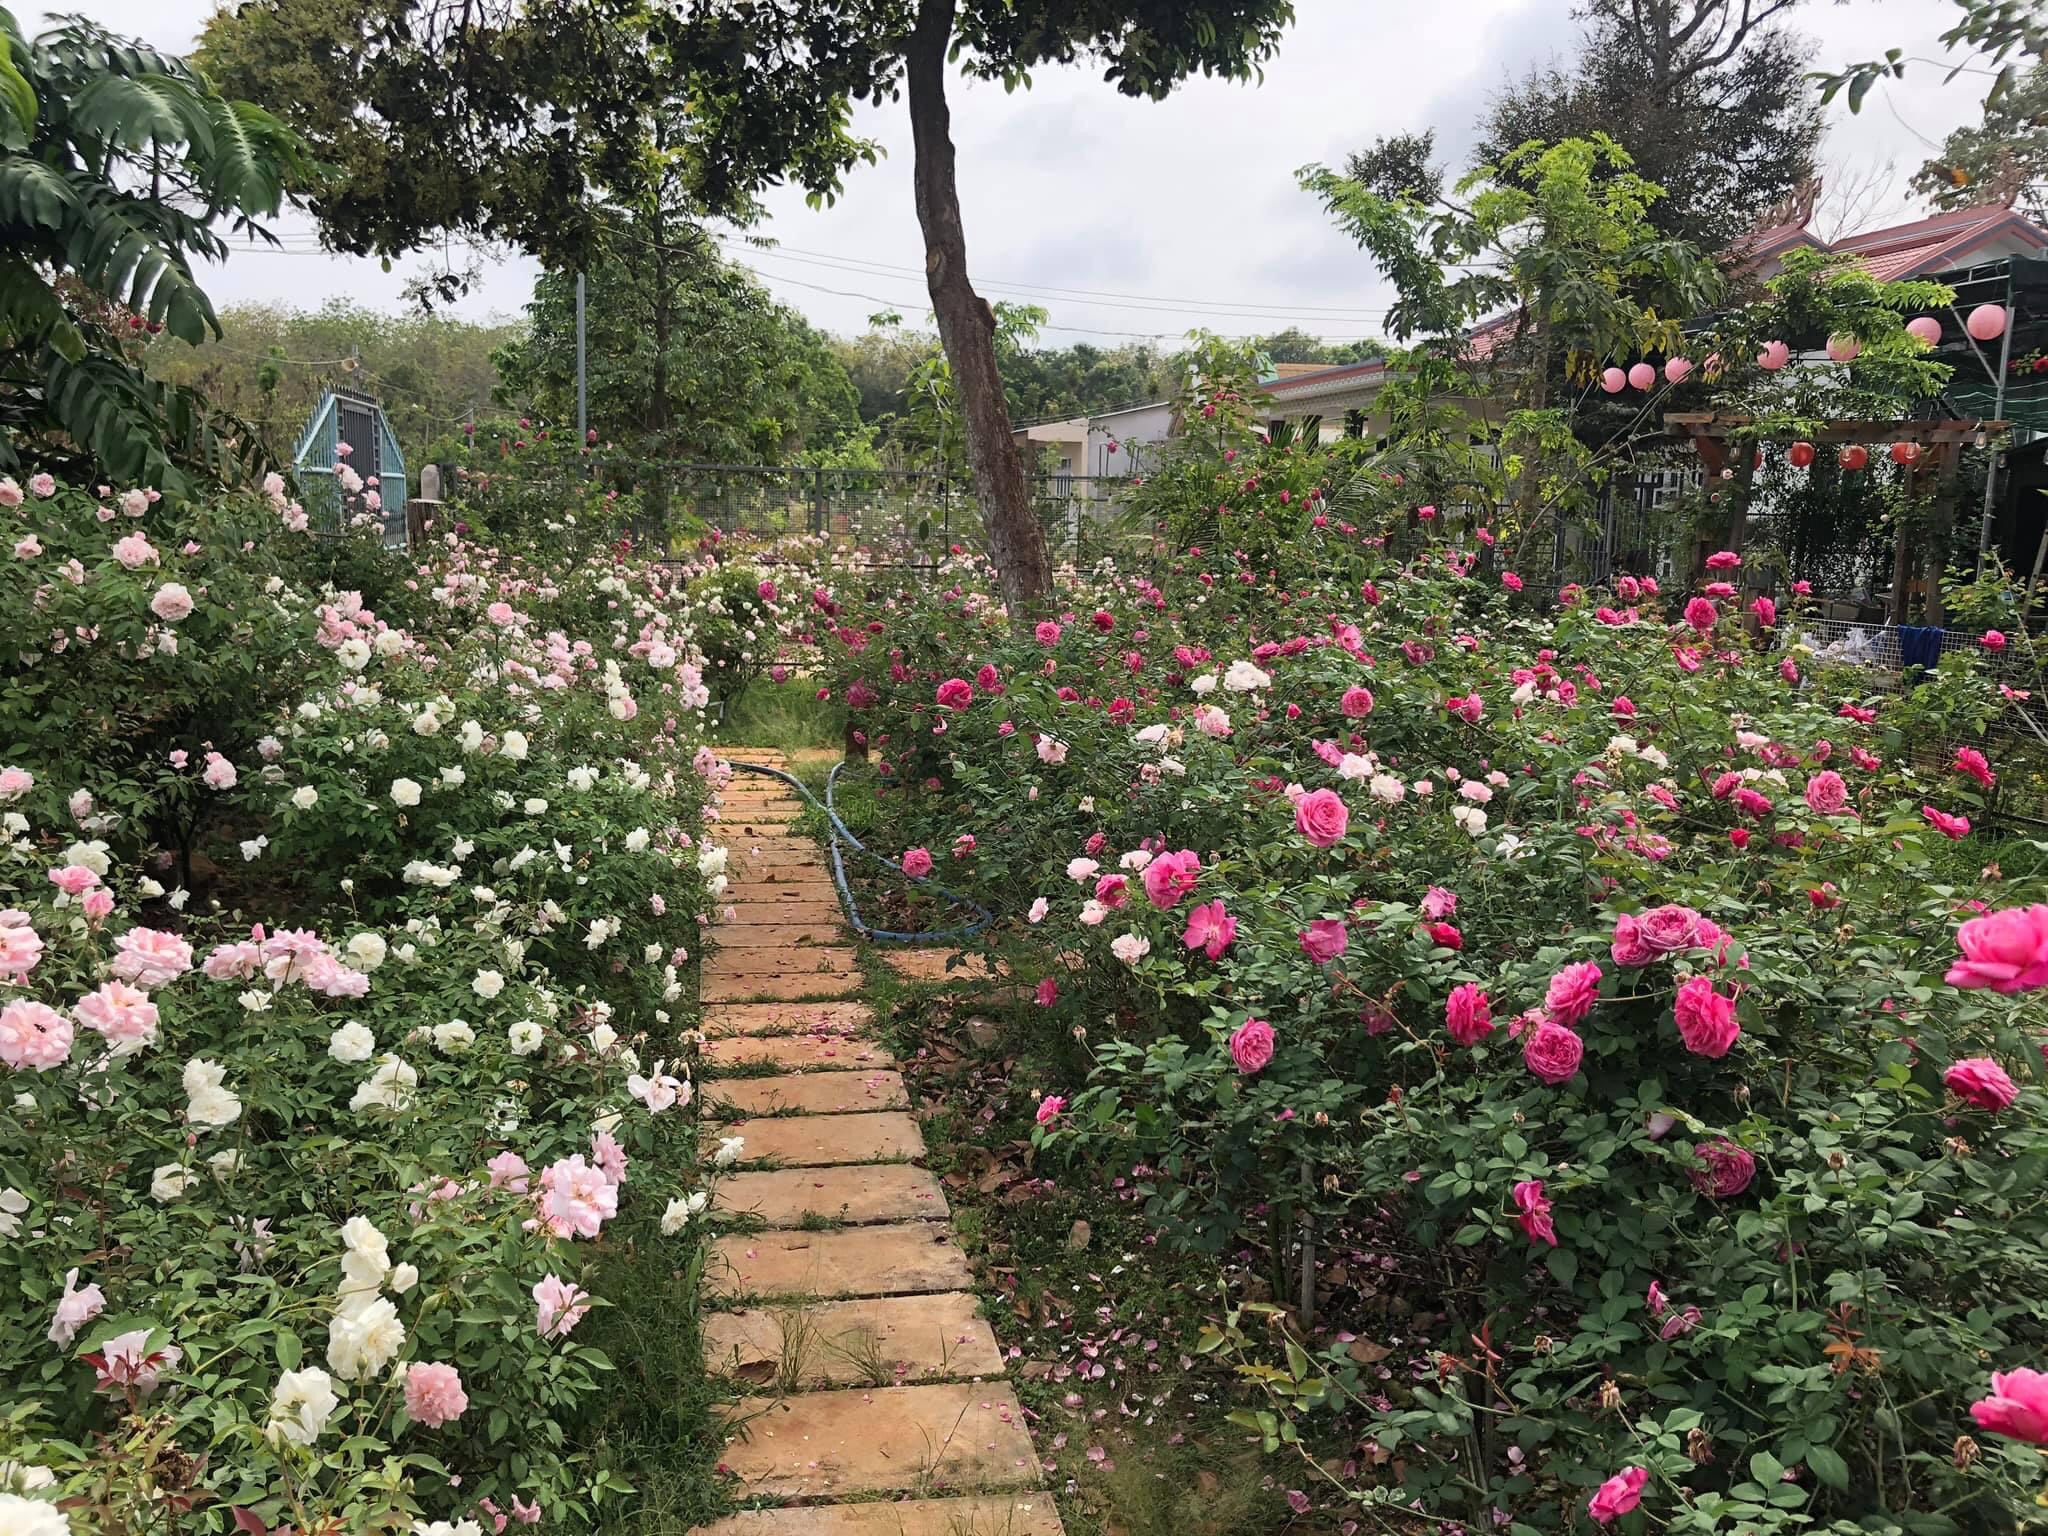 Các loại hồng cổ khoe sắc trong khu vườn nhỏ xinh xắn.